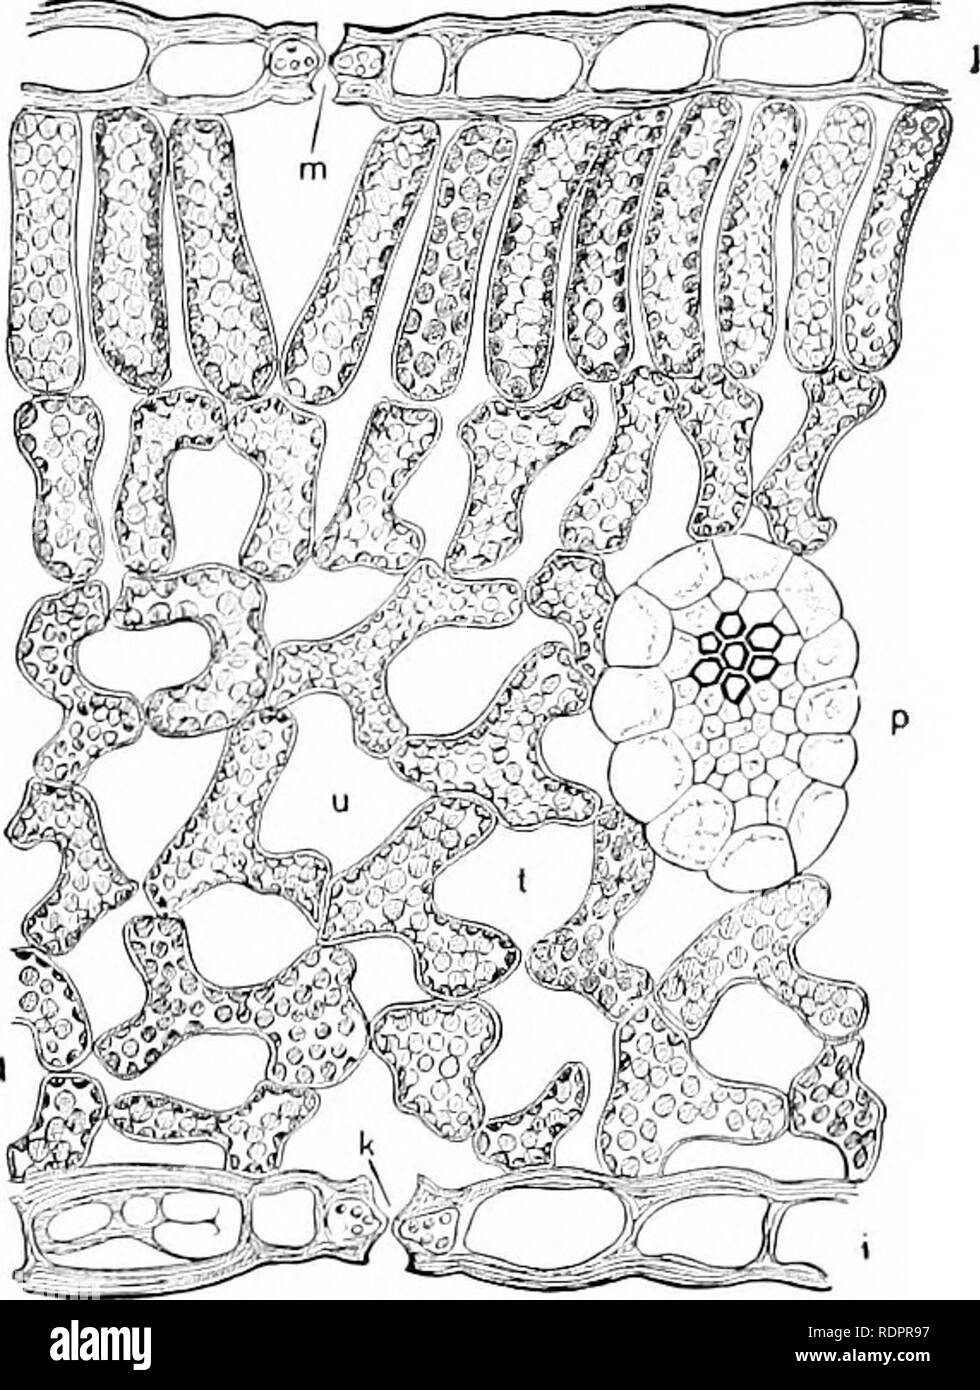 . Einführung in die Botanik. Botanik. Einführung in die Botanik. chloroplasten liegen innerhalb der Zellen und schließen gegen die Wände, und das für die Zirkulation der Luft es gibt Räume zwischen den Zellen, die sich in der Kommunikation mit der stomata. Ein Verweis auf Bild. 36 wird das Verhältnis der Chloroplasten an den Rest des Blattes Struktur zeigen. Die Zellen der oberen Seite des Blattes, bezeichnet die palisade Zellen werden in regelmäßiger Reihenfolge mit ihren langen Achsen parallel zur Richtung des einfallenden Lichts eingestellt; die Chlo - roplasts sind eingebettet in die lebendige Substanz des protoplast, welche Leitungen die Zelle Wal Stockfoto